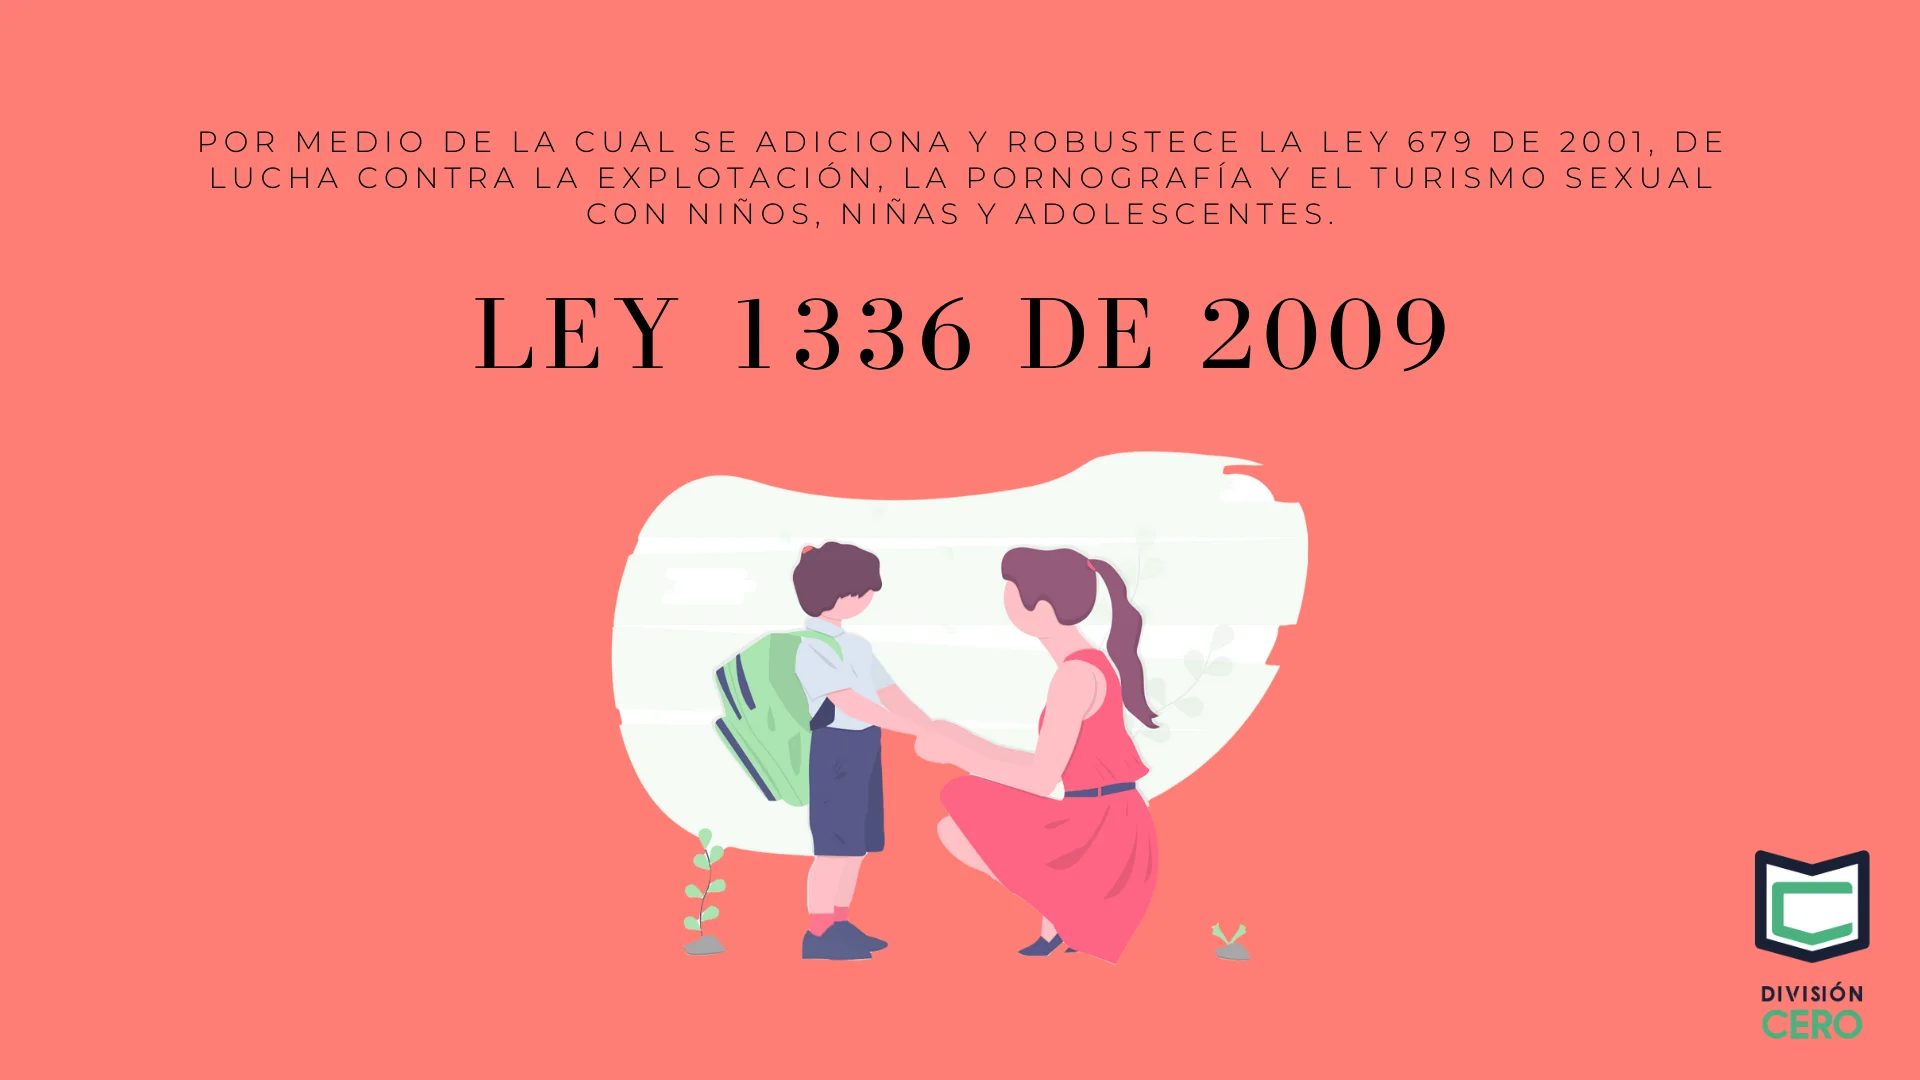 Ley 1336 de 2009 - Conocida como Ley contra la Pornografía Infantil